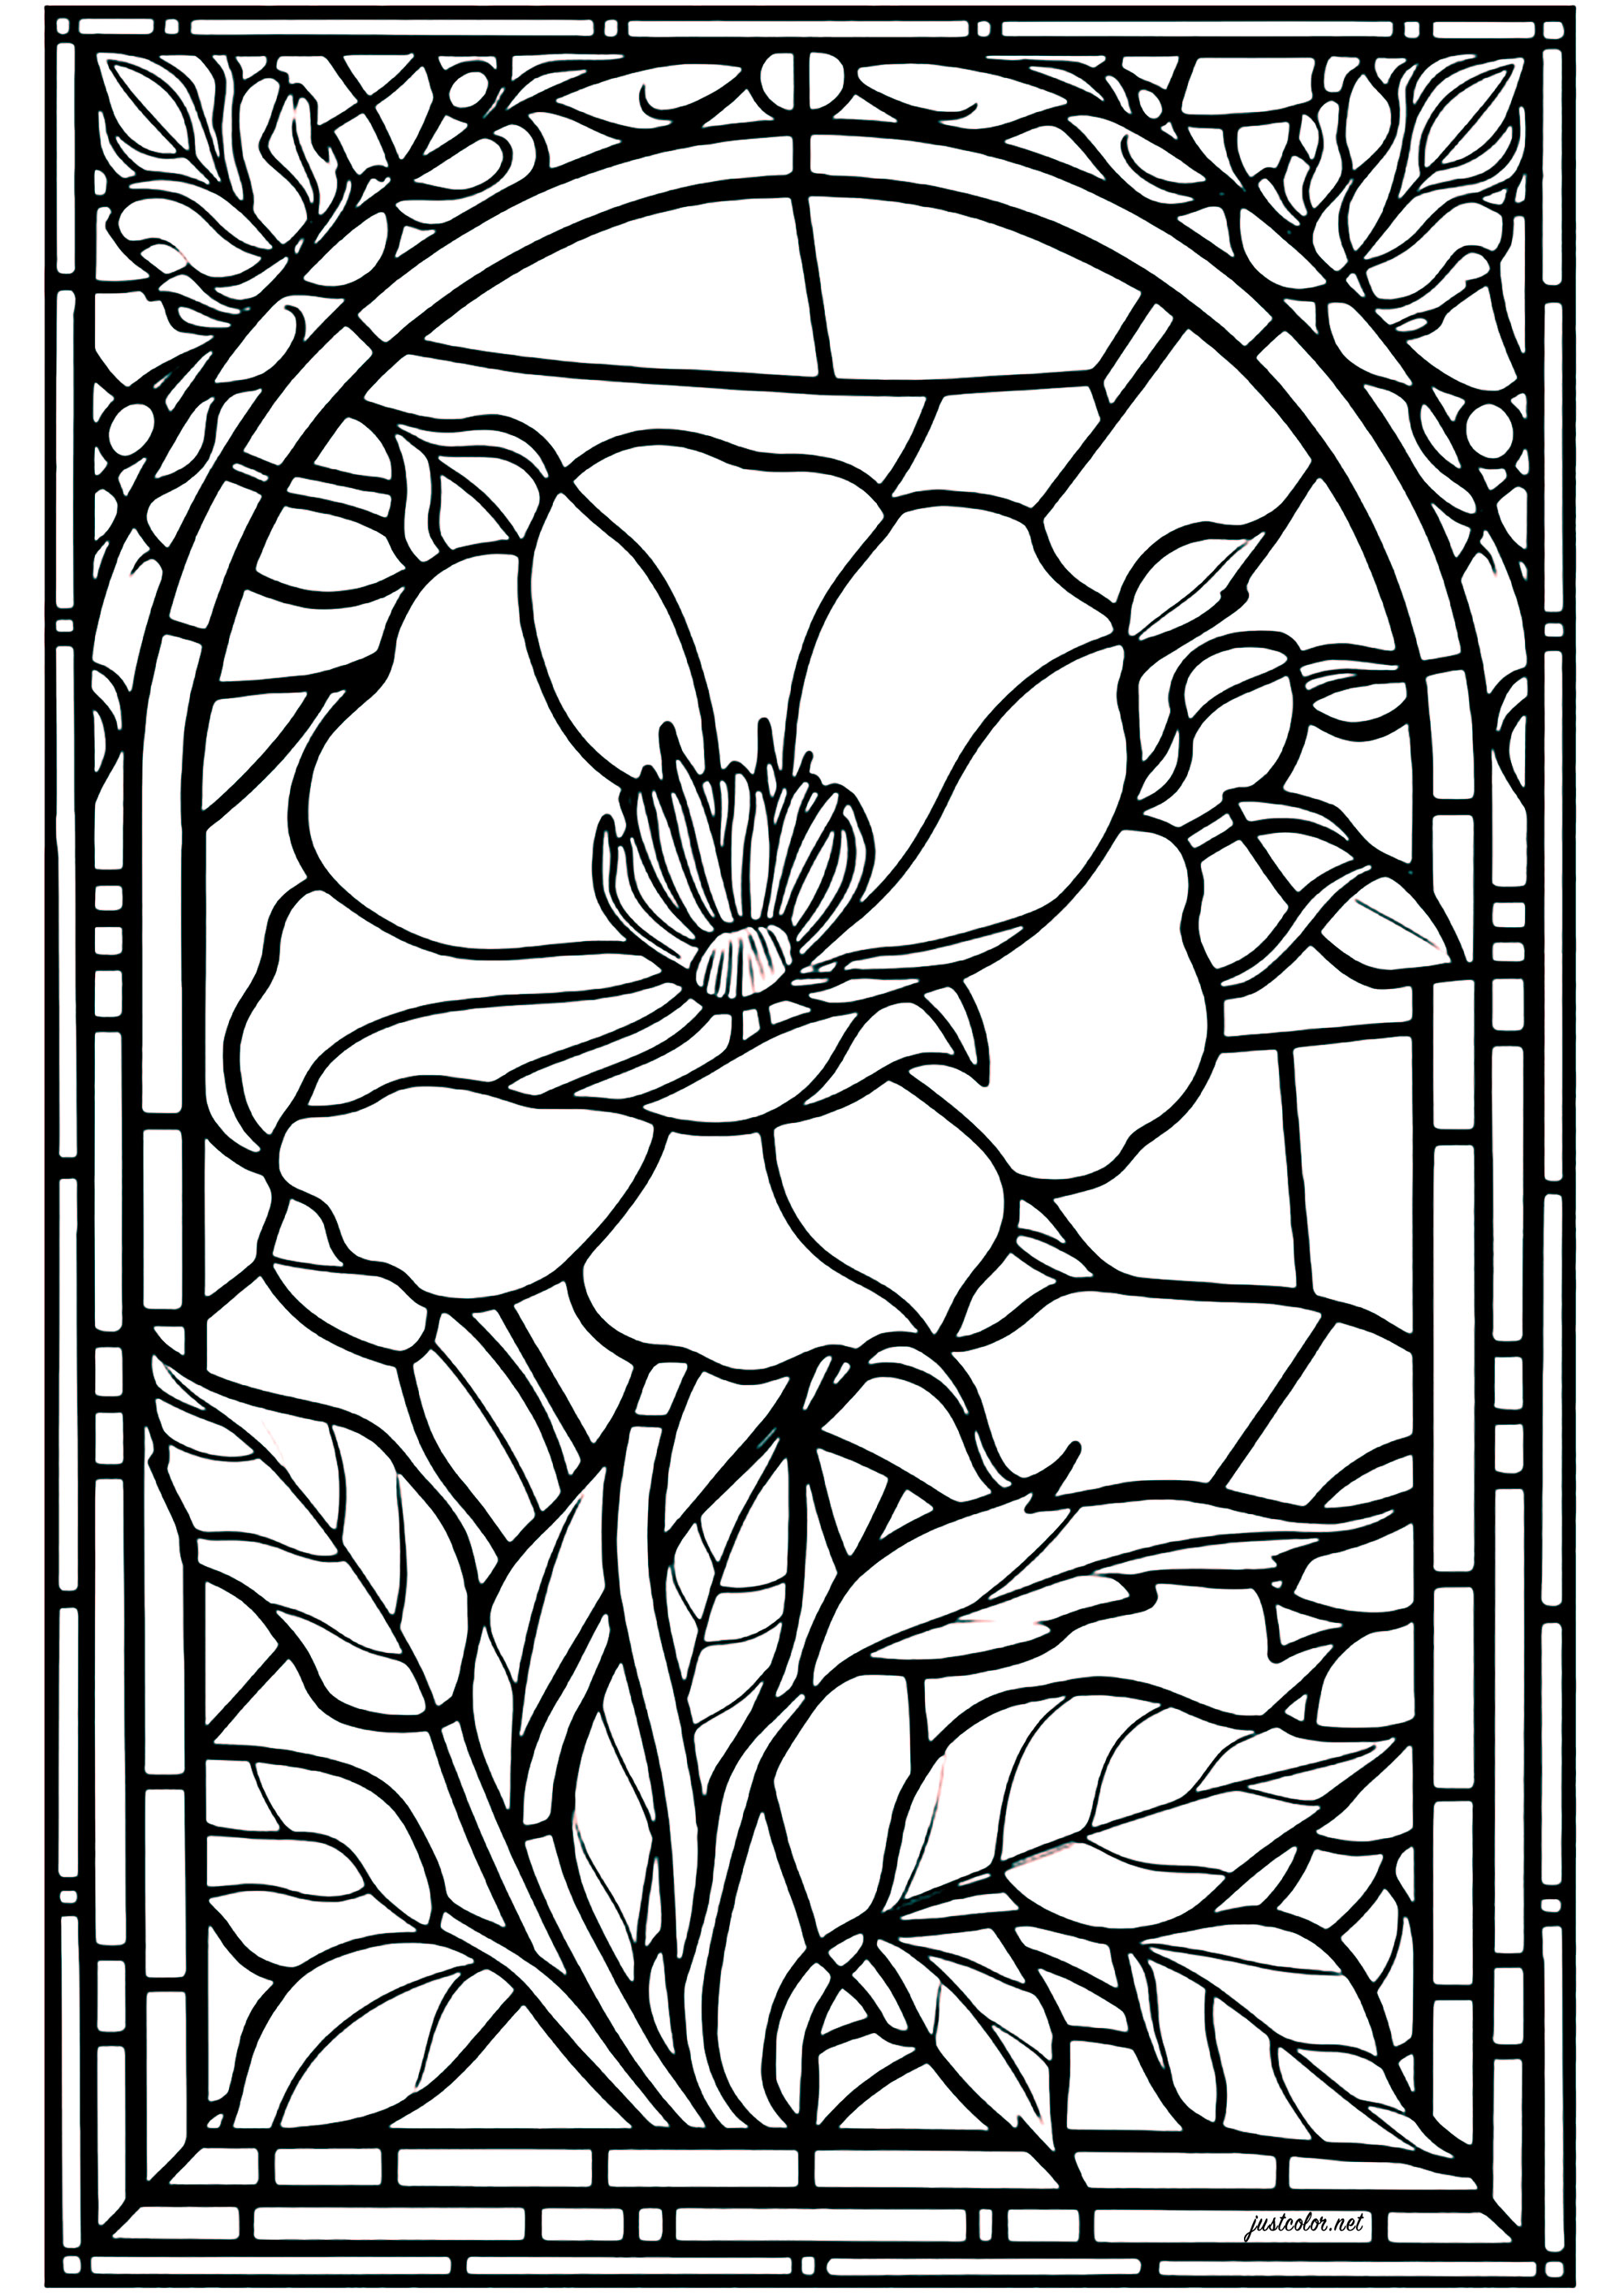 Coloriage d'un vitrail ayant comme sujet principal une jolie fleur